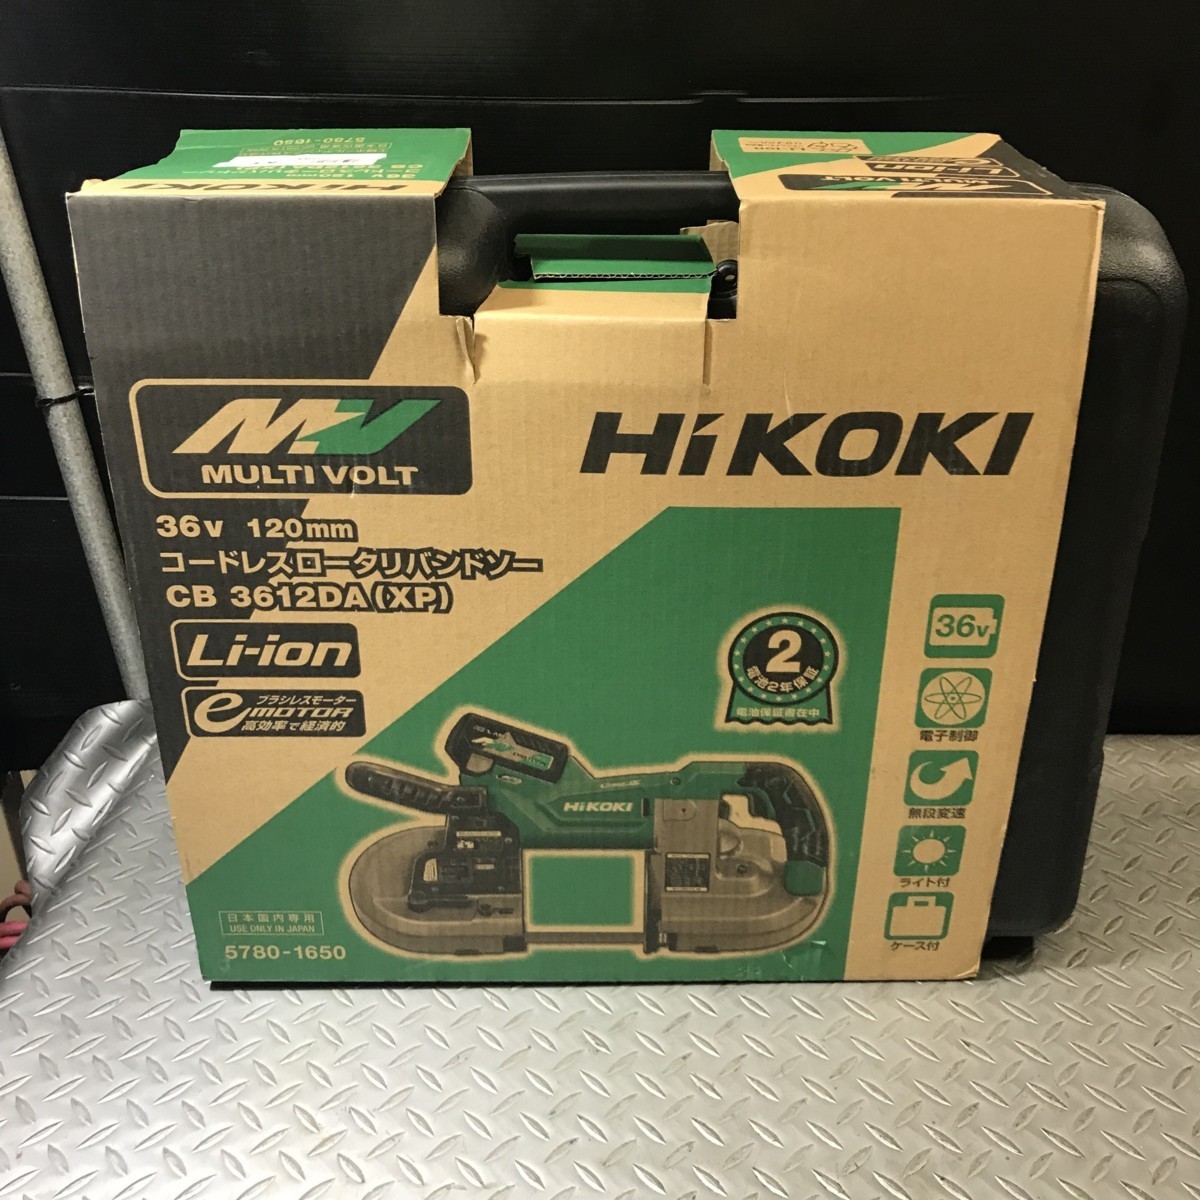 売る  CB3612DA(XP) コードレスロータリバンドソー ハイコーキ HIKOKI 工具/メンテナンス